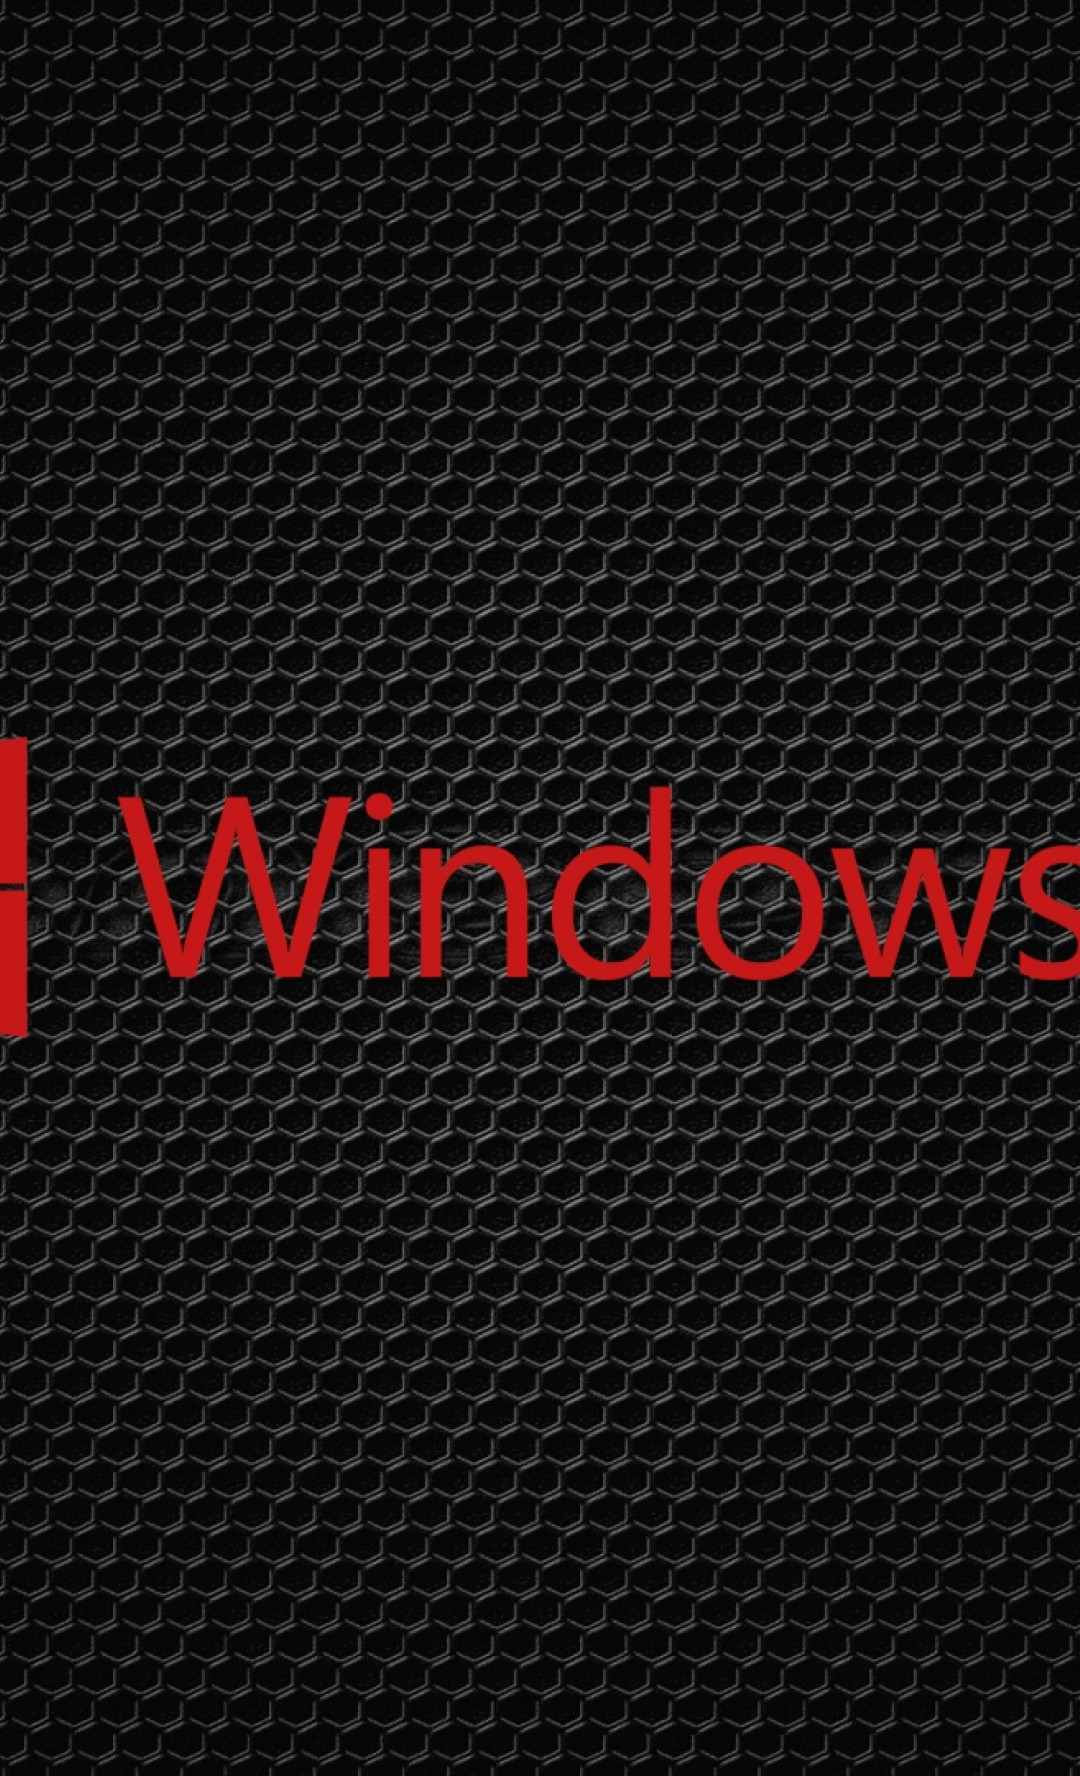 windows 10